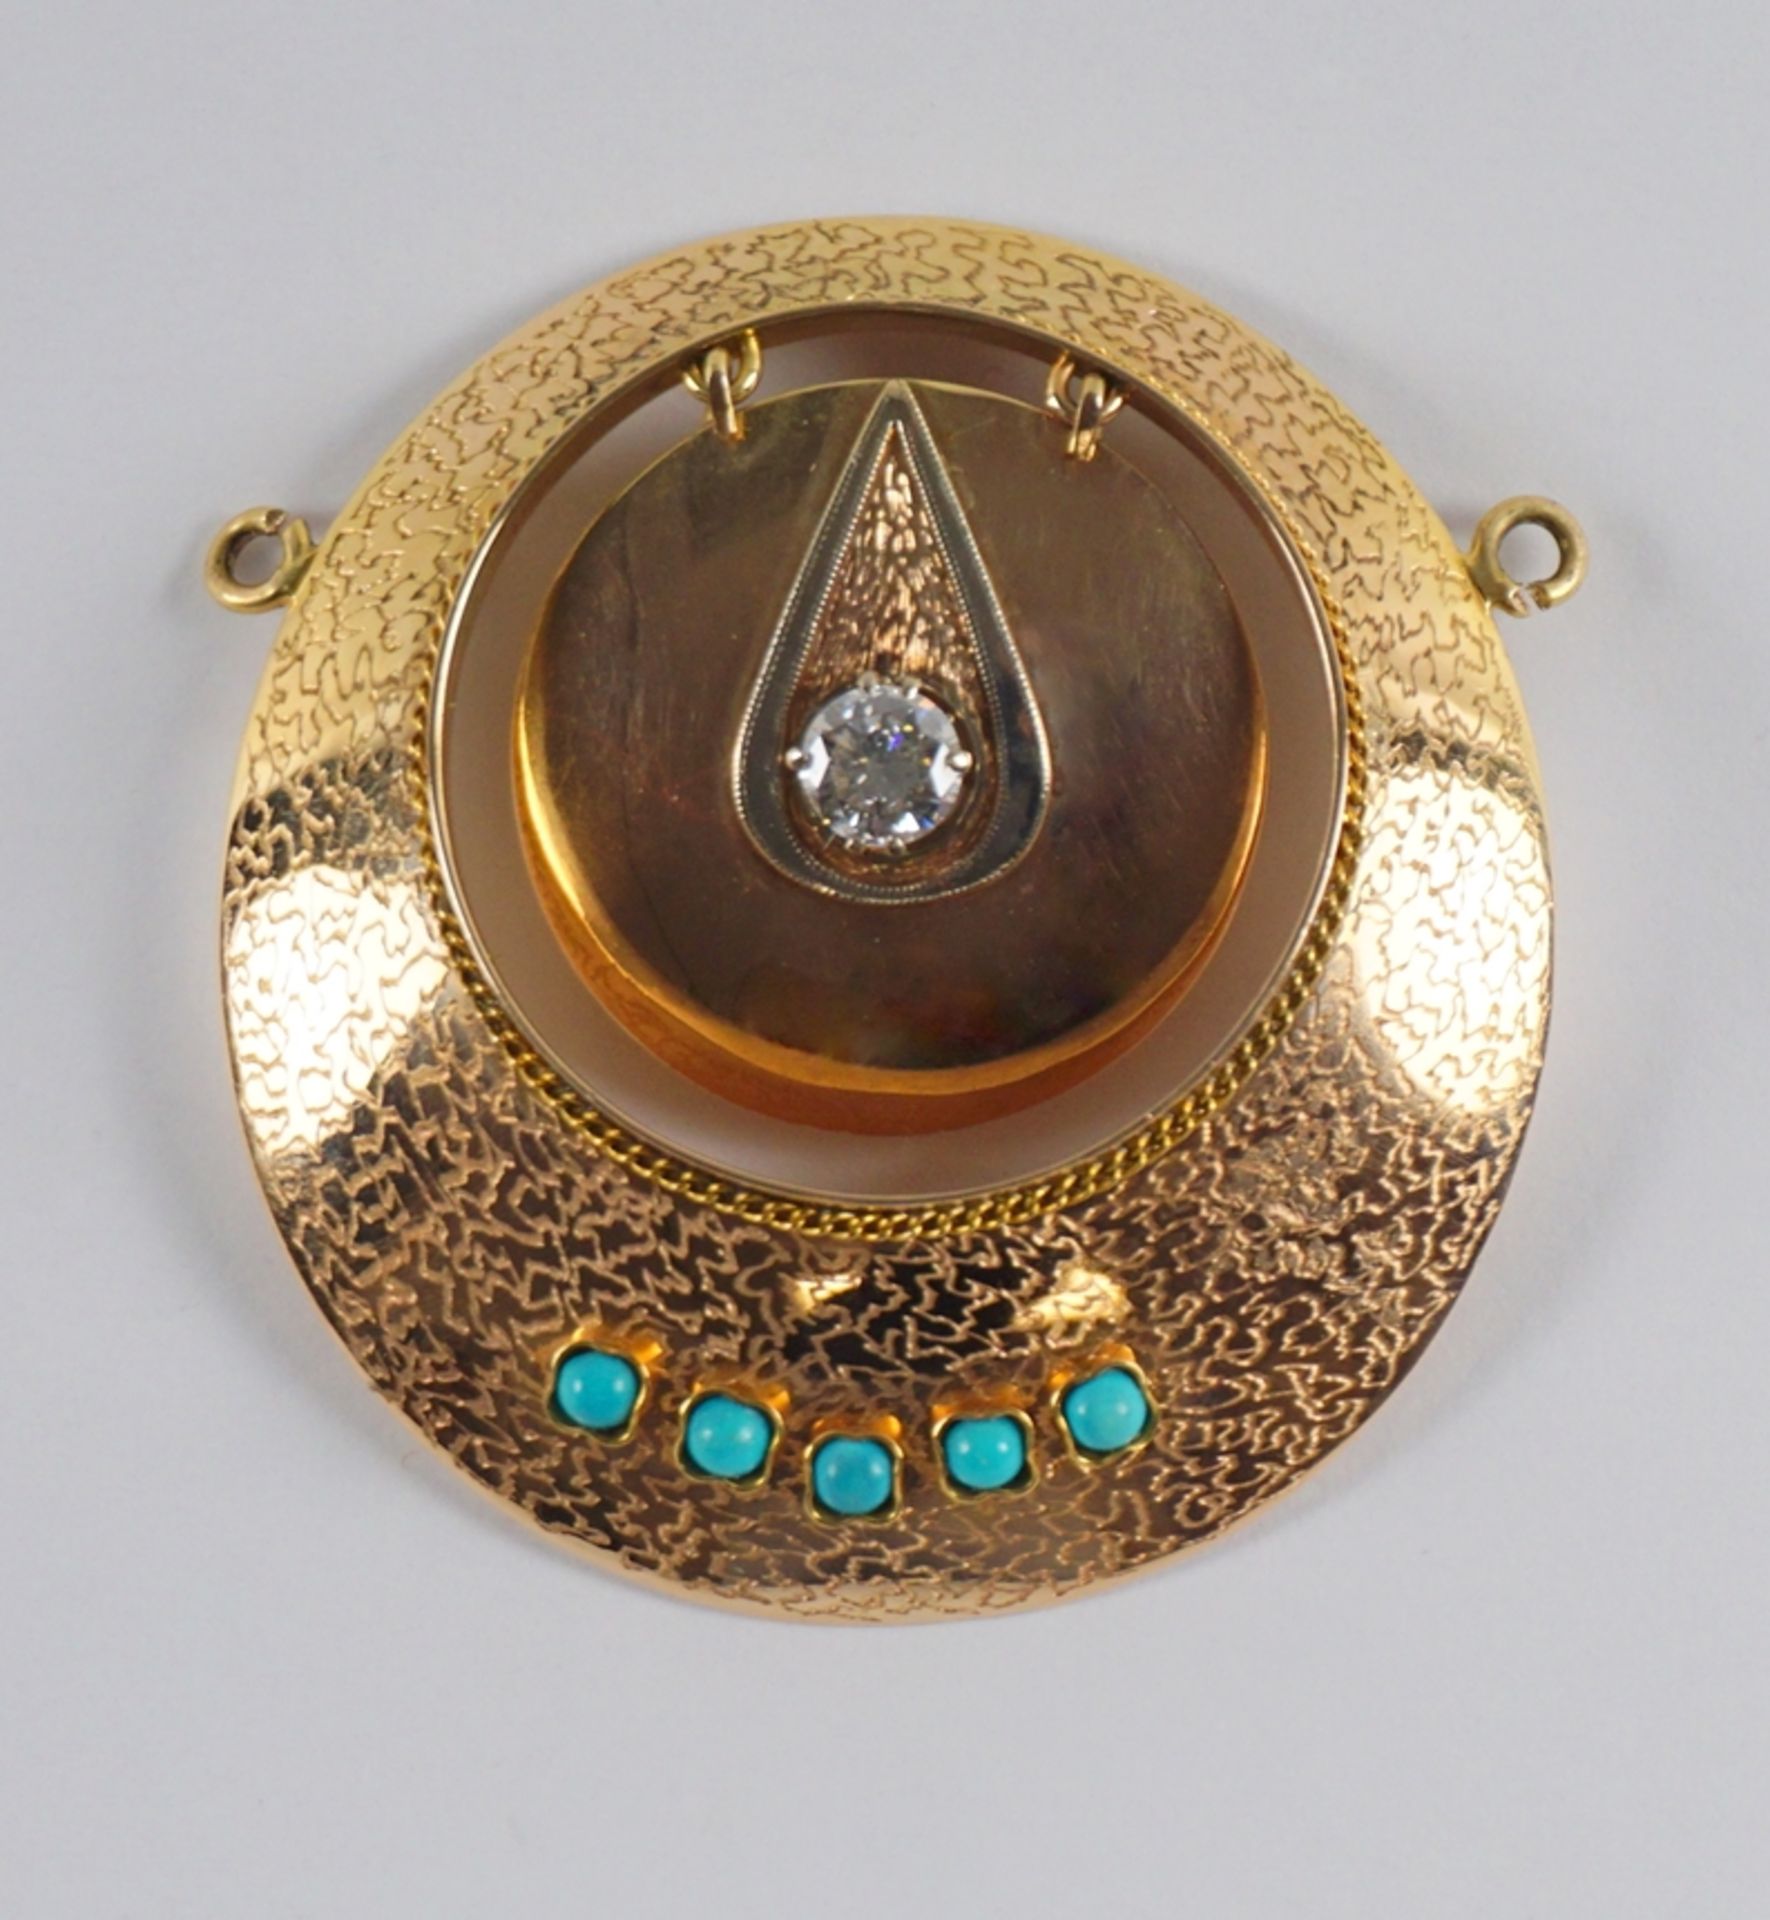 Collier-Mittelteil mit Diamant-Brillant ca. 0,75ct und 5 Türkiskugeln, 585er Rotgold, Gew.13,58g